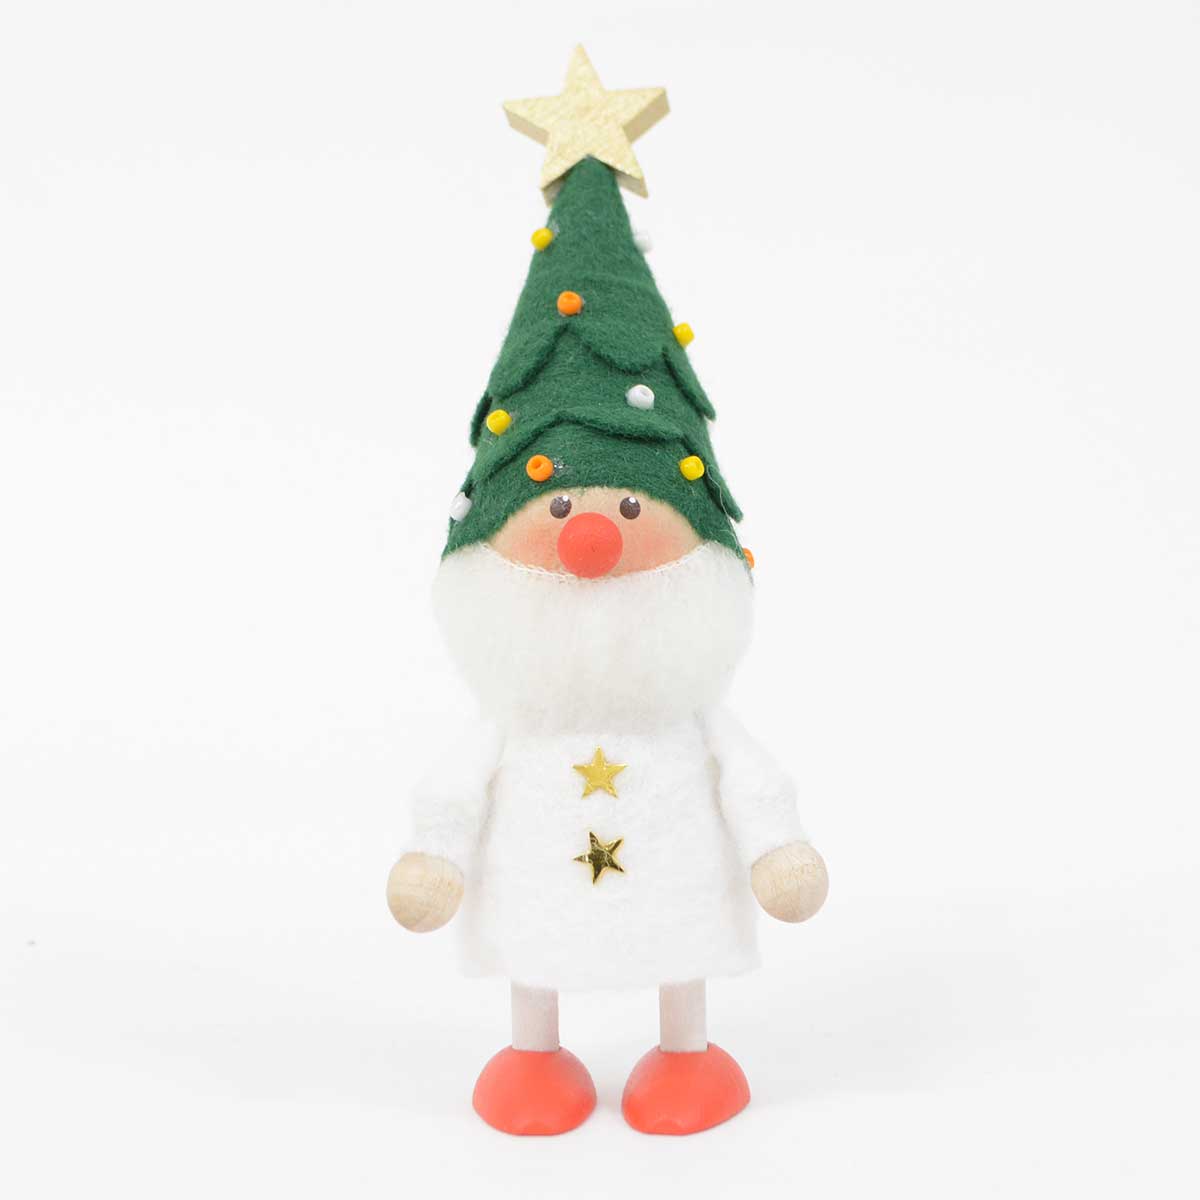 【ノルディカ公式ショップ限定】NORDIKA nisse ノルディカ ニッセ クリスマス 木製人形 ( ツリー帽子のサンタ )